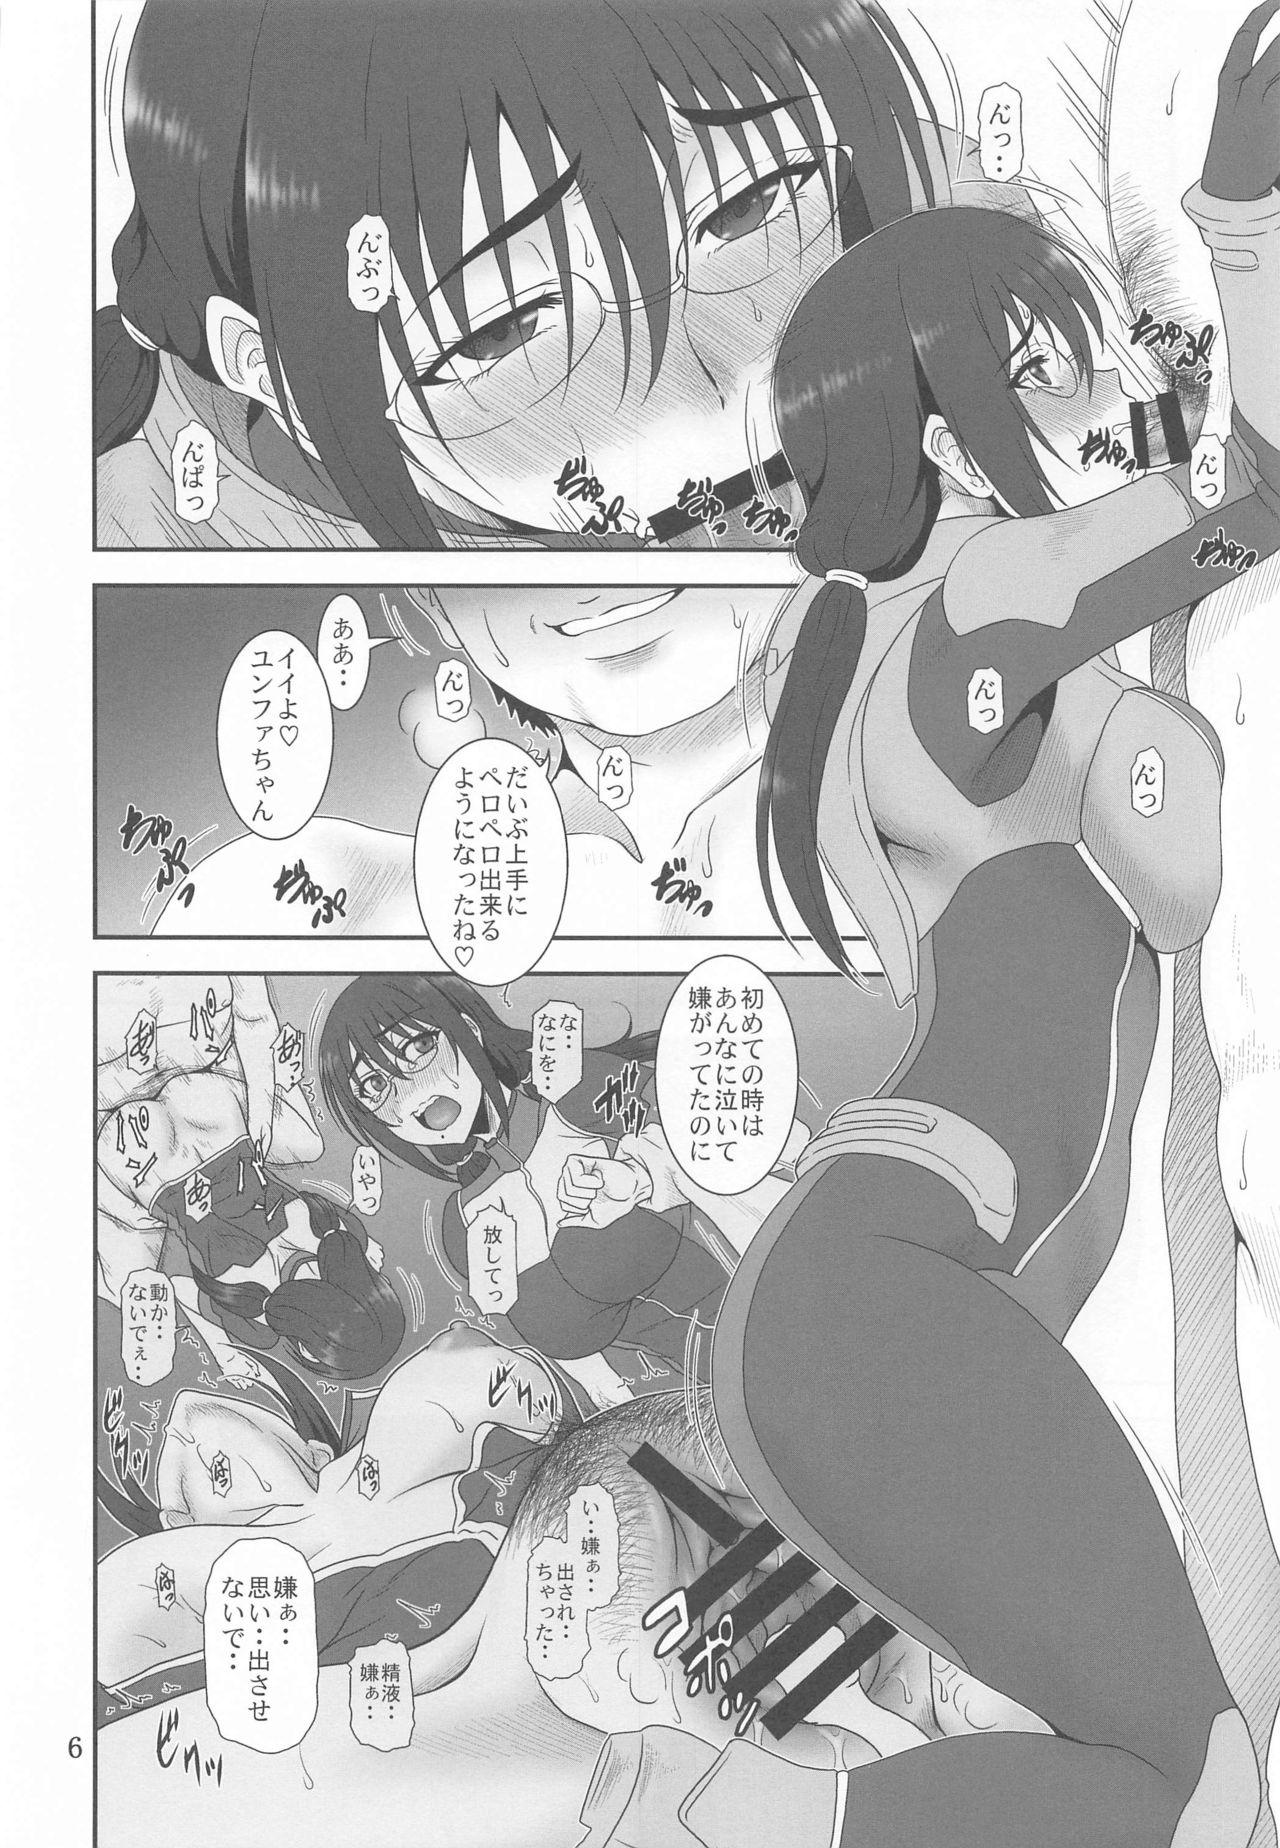 Scene Kyuukyou no Wakusei - Planet of plight - Kanata no astra Gaping - Page 5